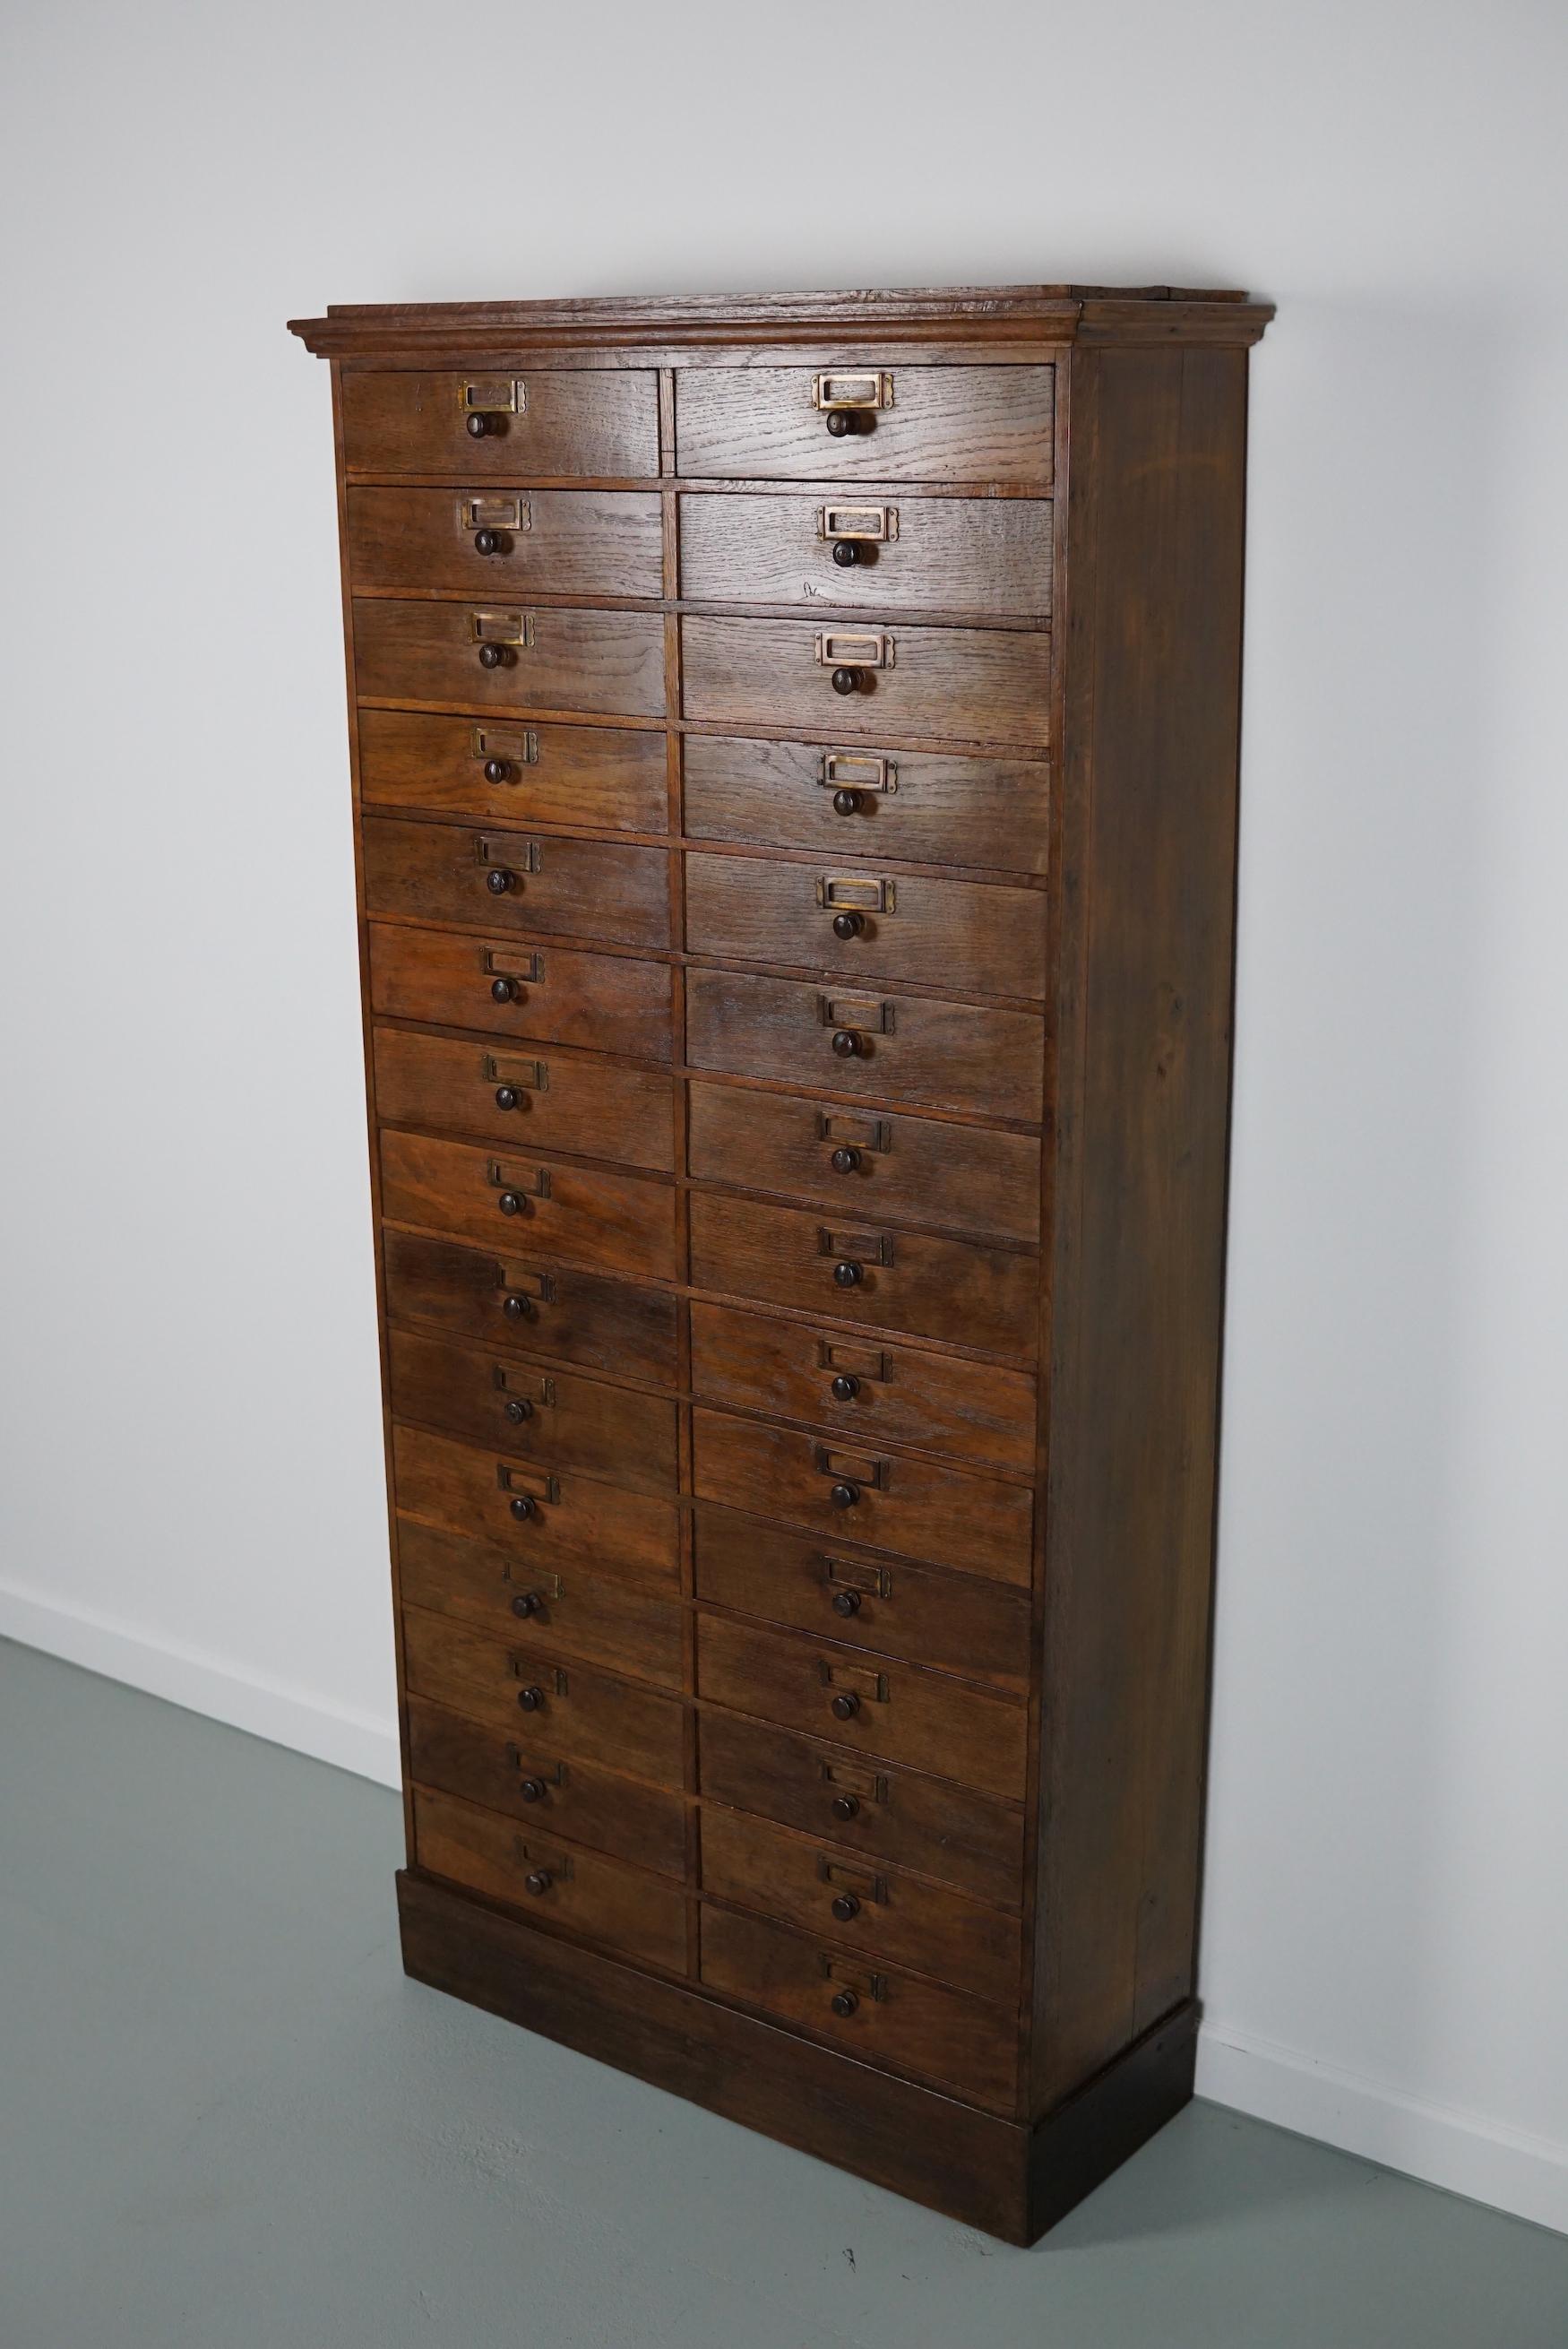 Ce meuble a été fabriqué en France à partir de chêne et de pin au début du XXe siècle. Il comporte 30 tiroirs avec des boutons en chêne et des porte-cartes en laiton. Il était utilisé pour stocker des pièces dans un atelier d'horlogerie/bijouterie.